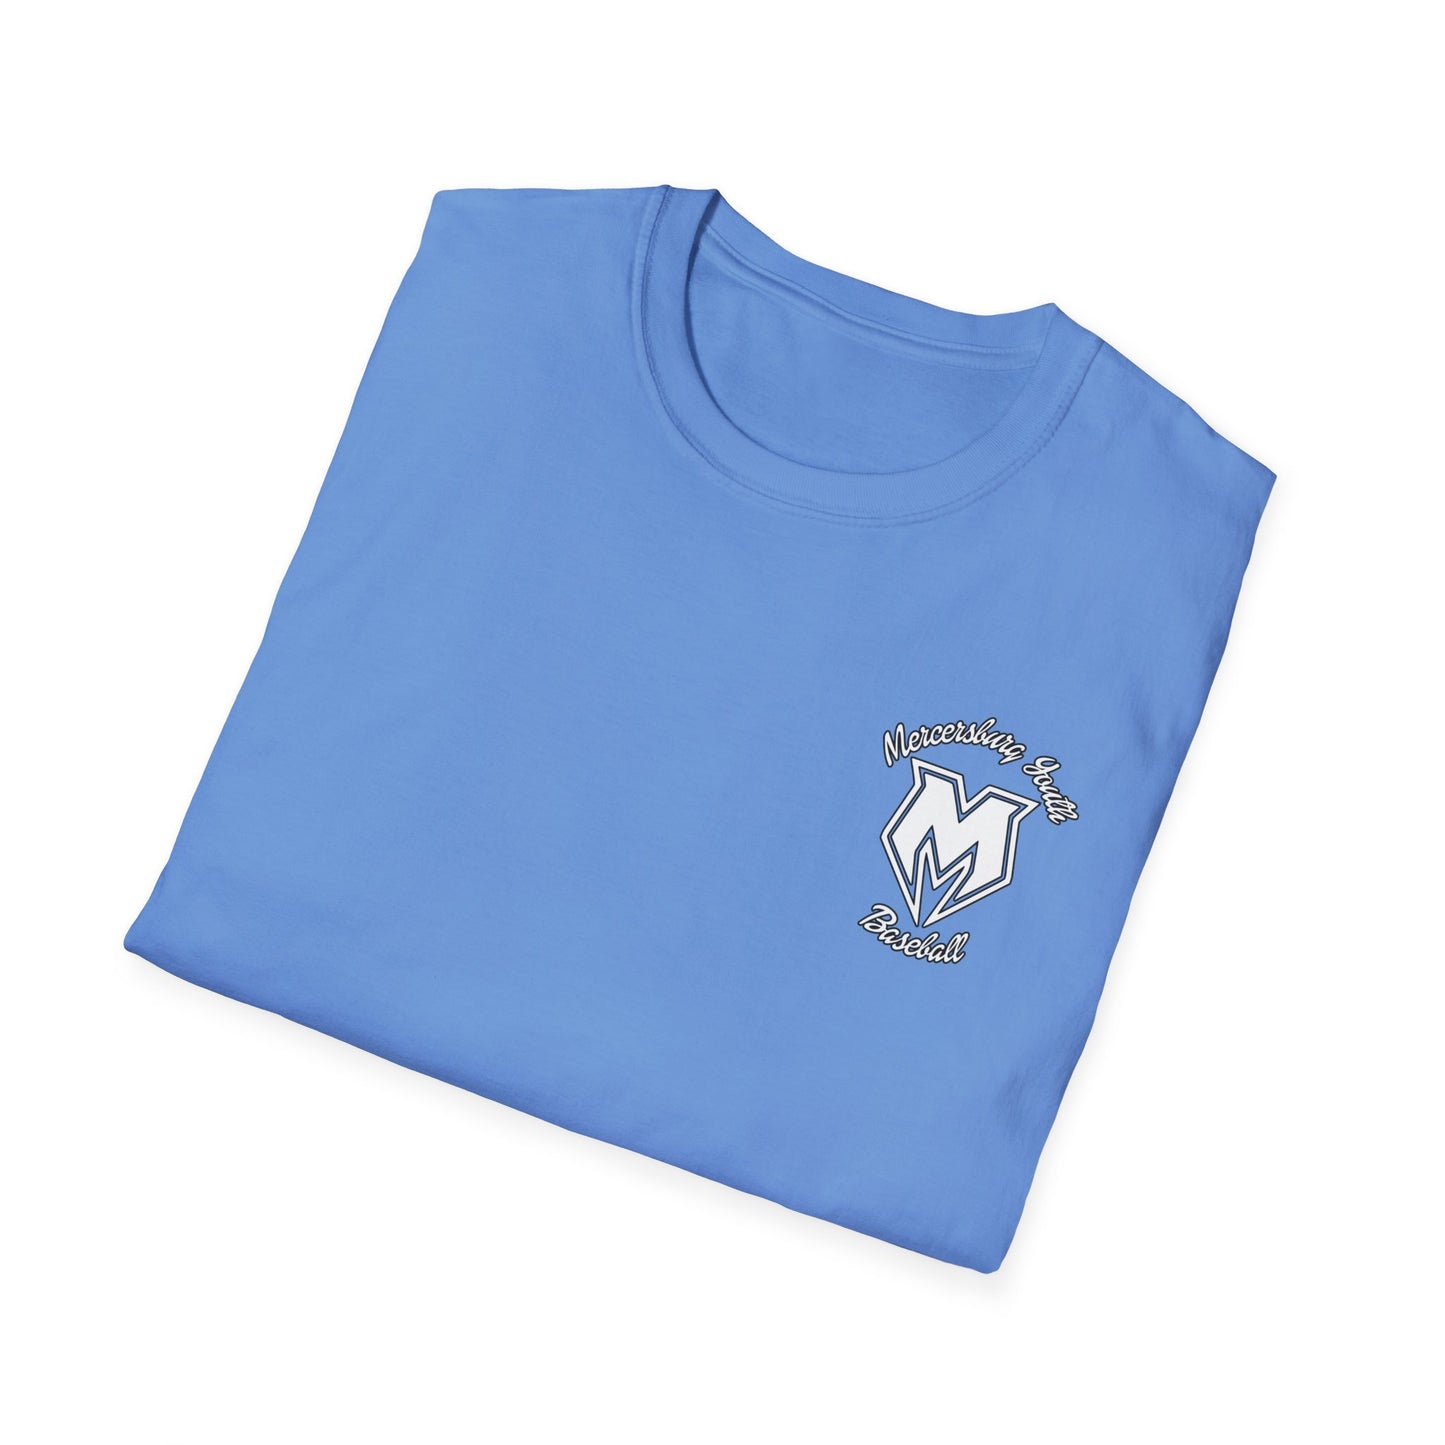 M Burg baseball Unisex Softstyle T-Shirt